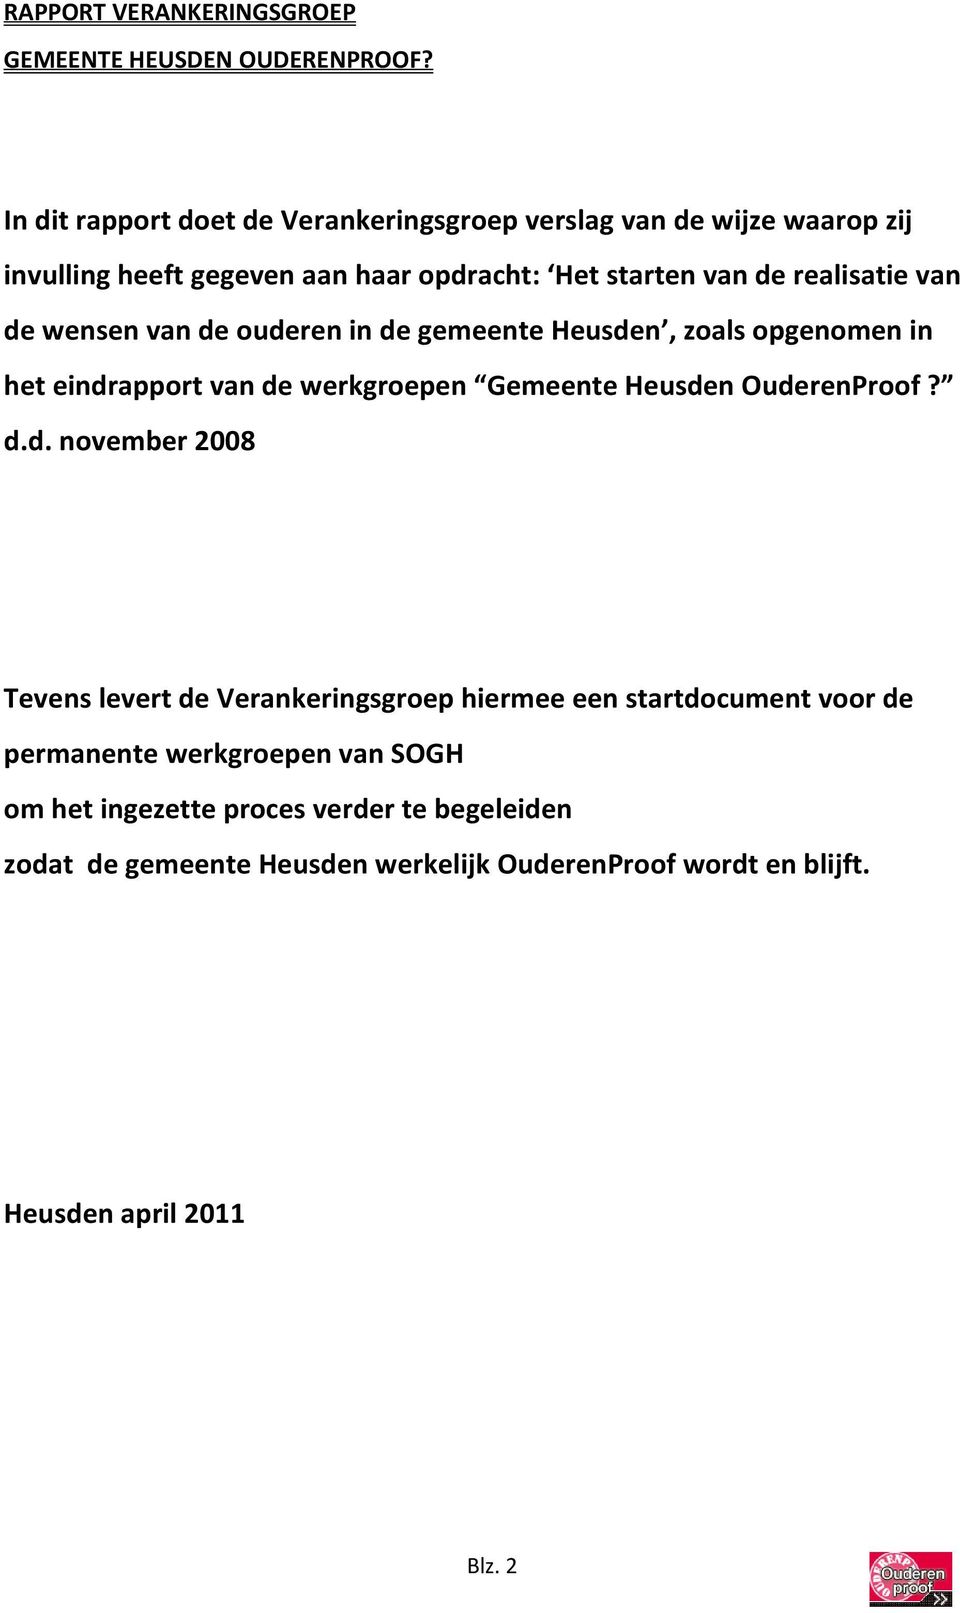 de wensen van de ouderen in de gemeente Heusden, zoals opgenomen in het eindrapport van de werkgroepen Gemeente Heusden OuderenProof? d.d. november